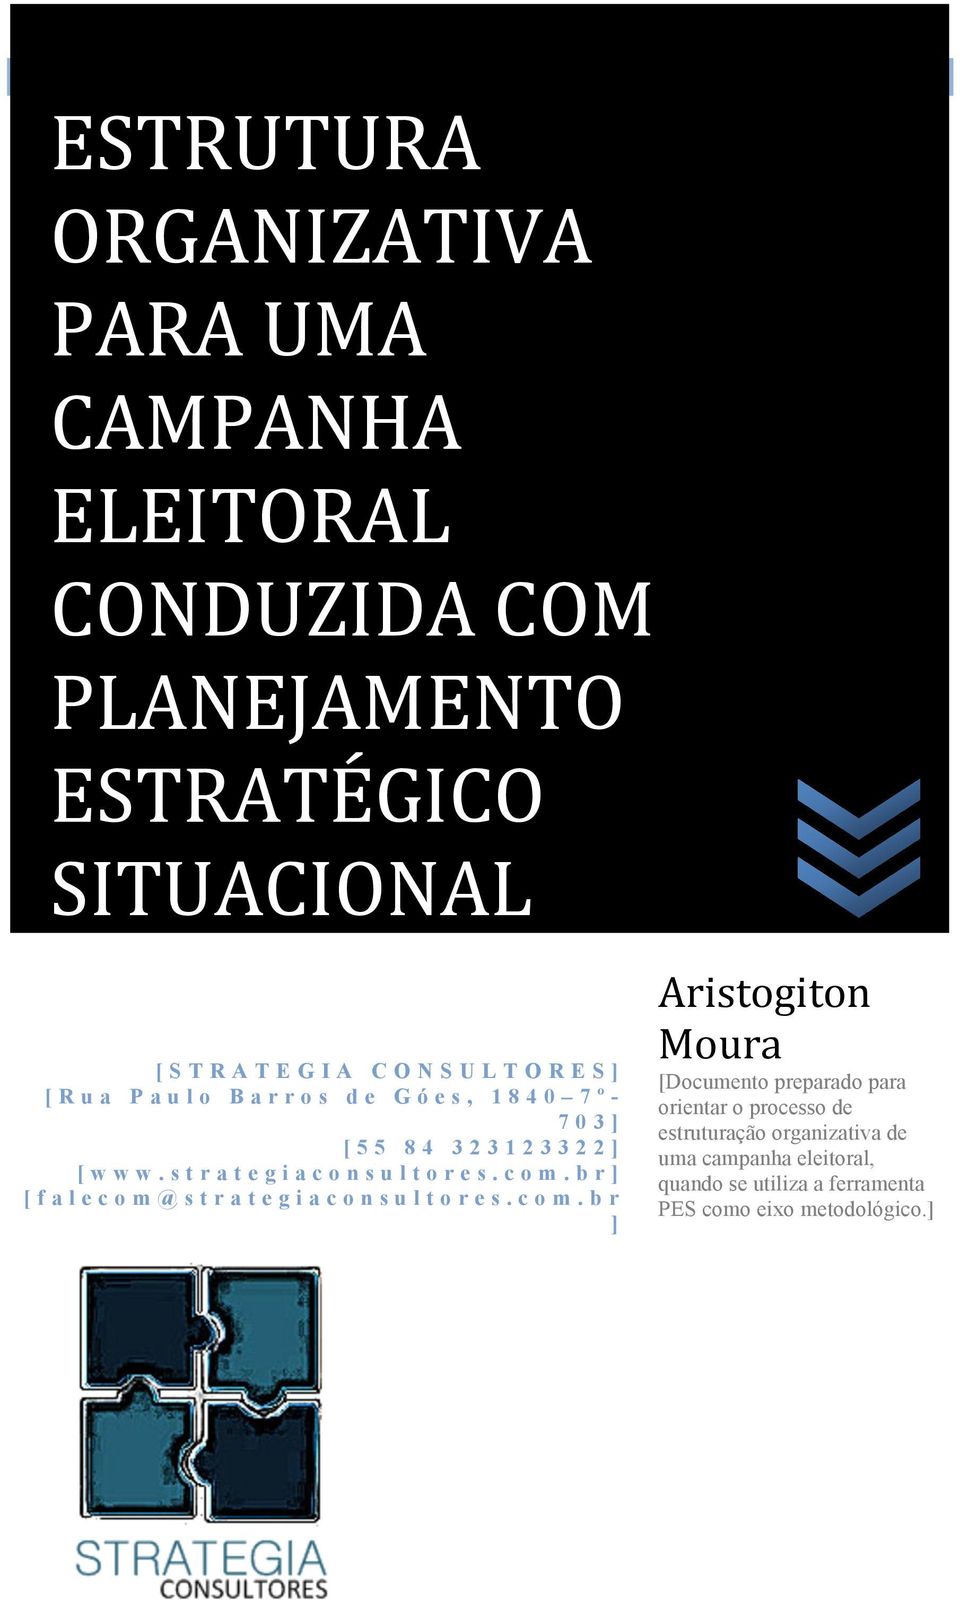 com.br] [ falecom@strategiaconsultores.com.br ] Aristogiton' Moura' [Documento preparado para orientar o processo